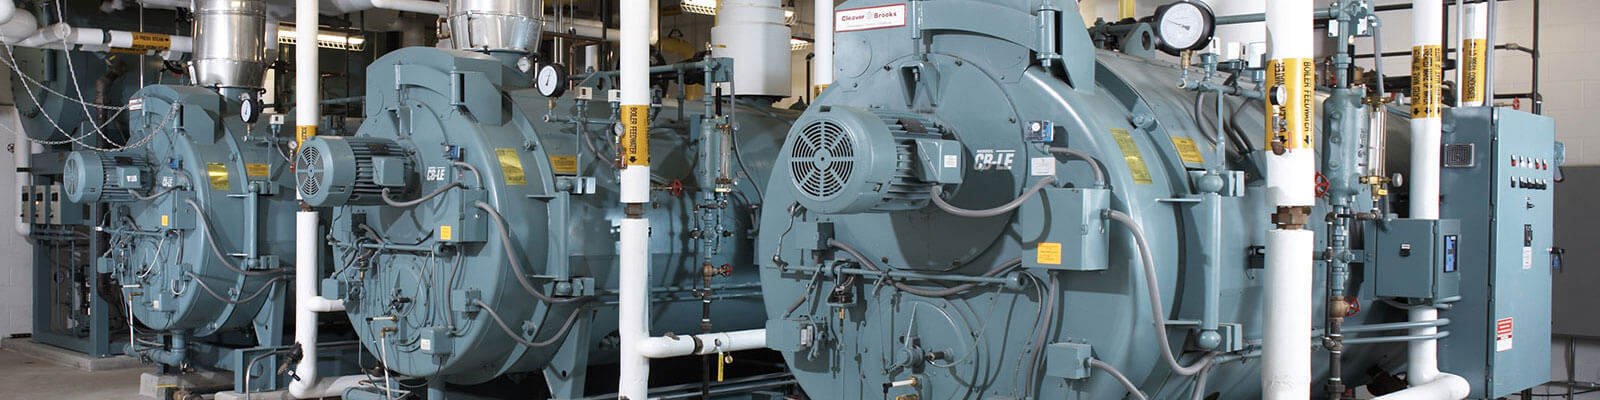 Siemens Differential Pressure Transmitter Banner